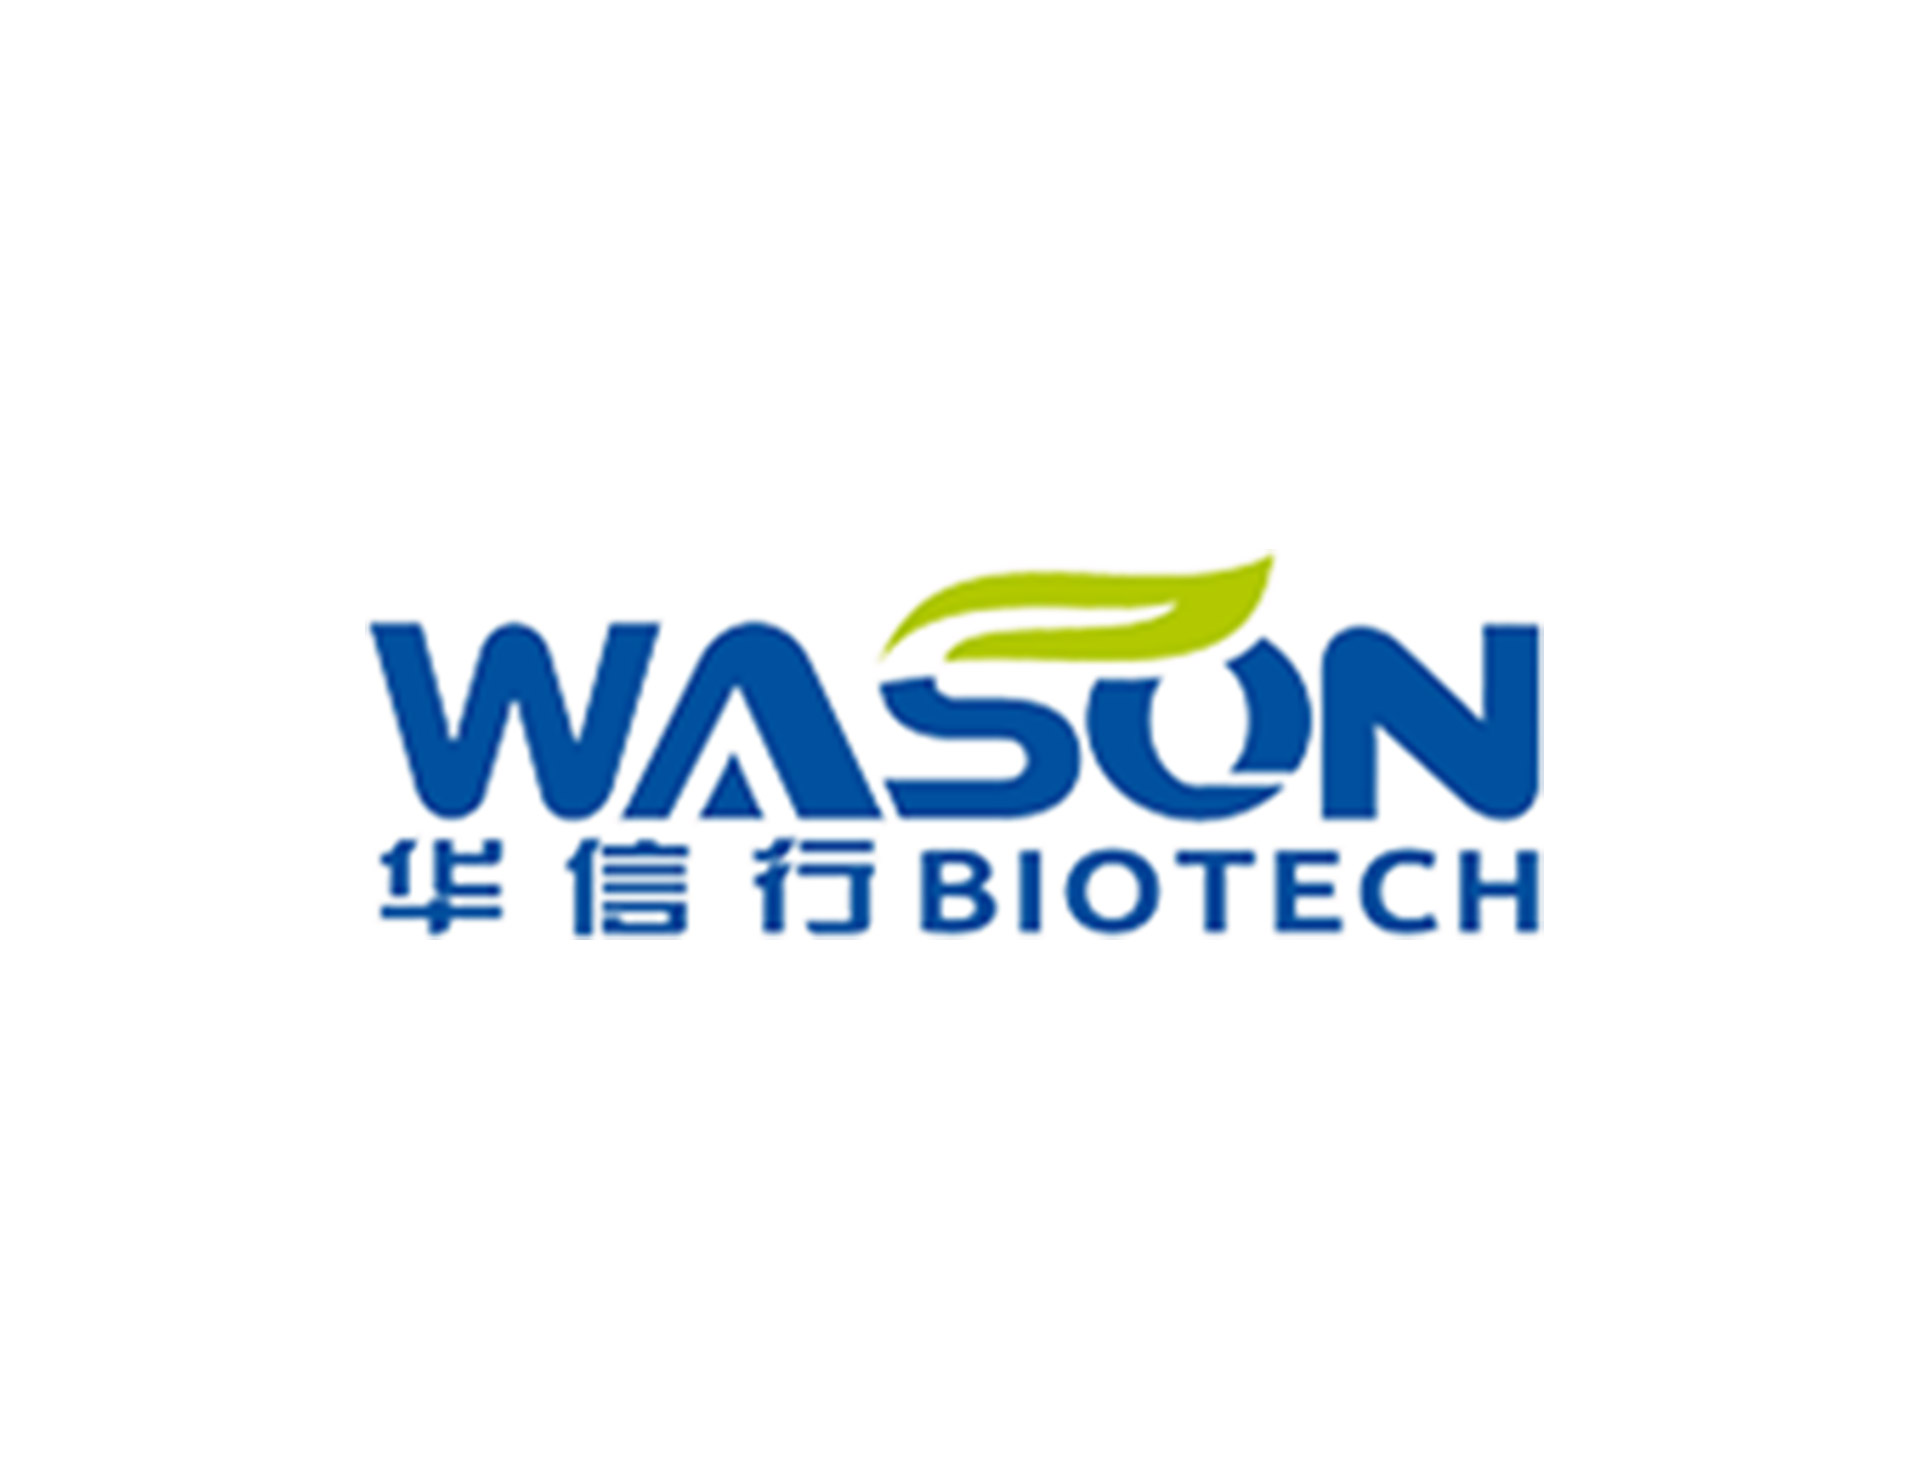 华信行生物科技公司创意设计是以wasono 在s字母上用绿叶结合